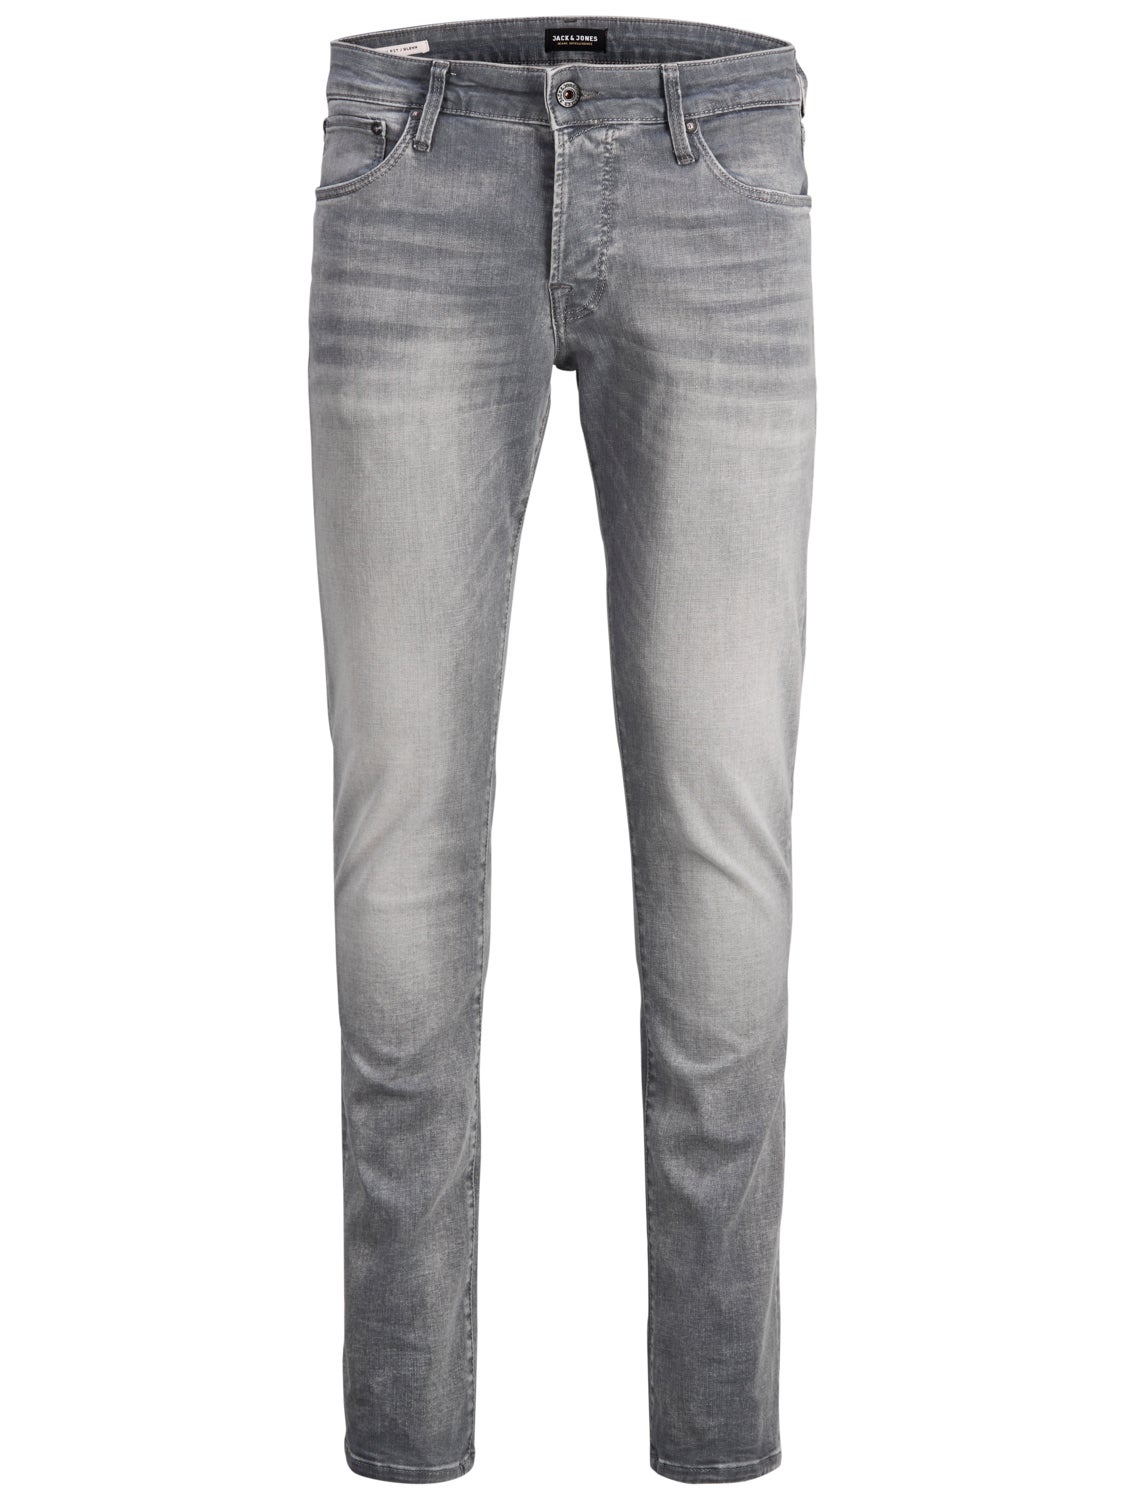 Jack & Jones Glenn Icon Jj 257 50sps Slim Fit Jeans in het Grijs voor heren Heren Kleding voor voor Jeans voor Slim jeans 